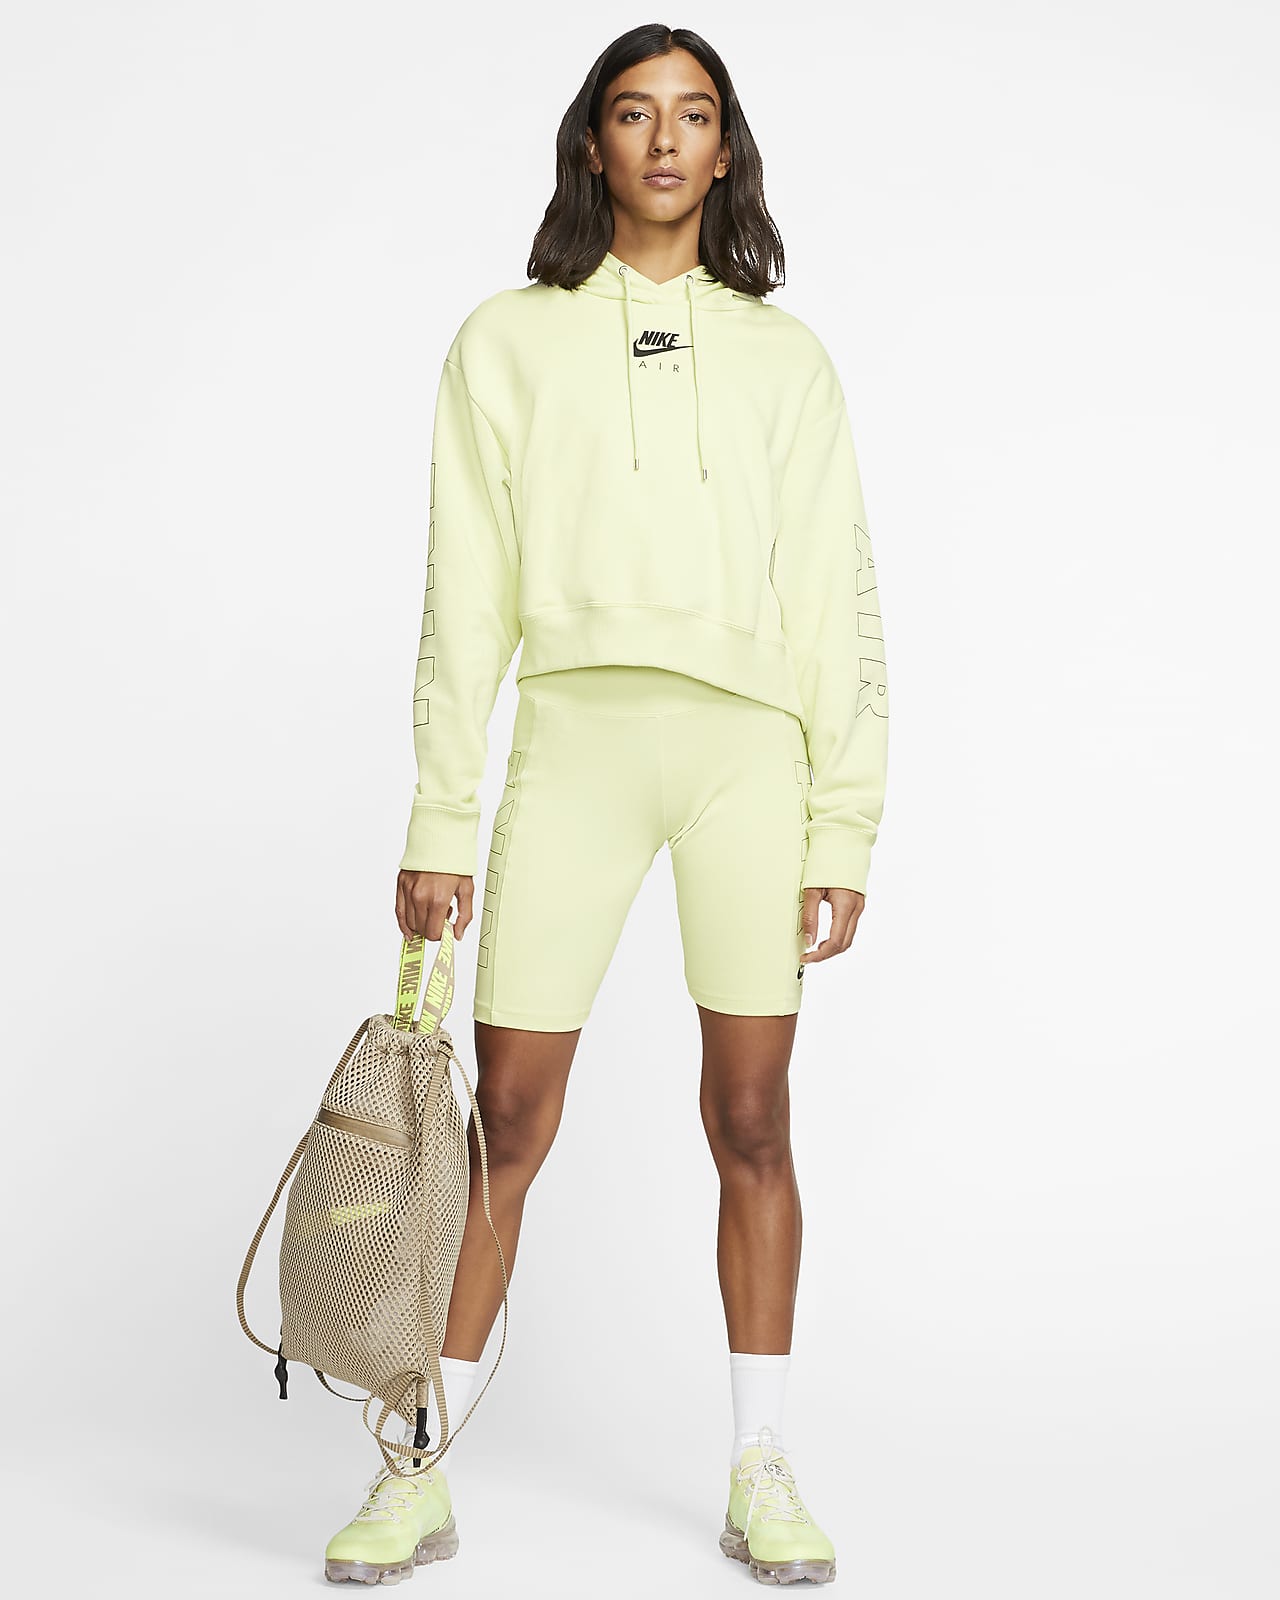 lemon sportswear - alkemyinnovation 